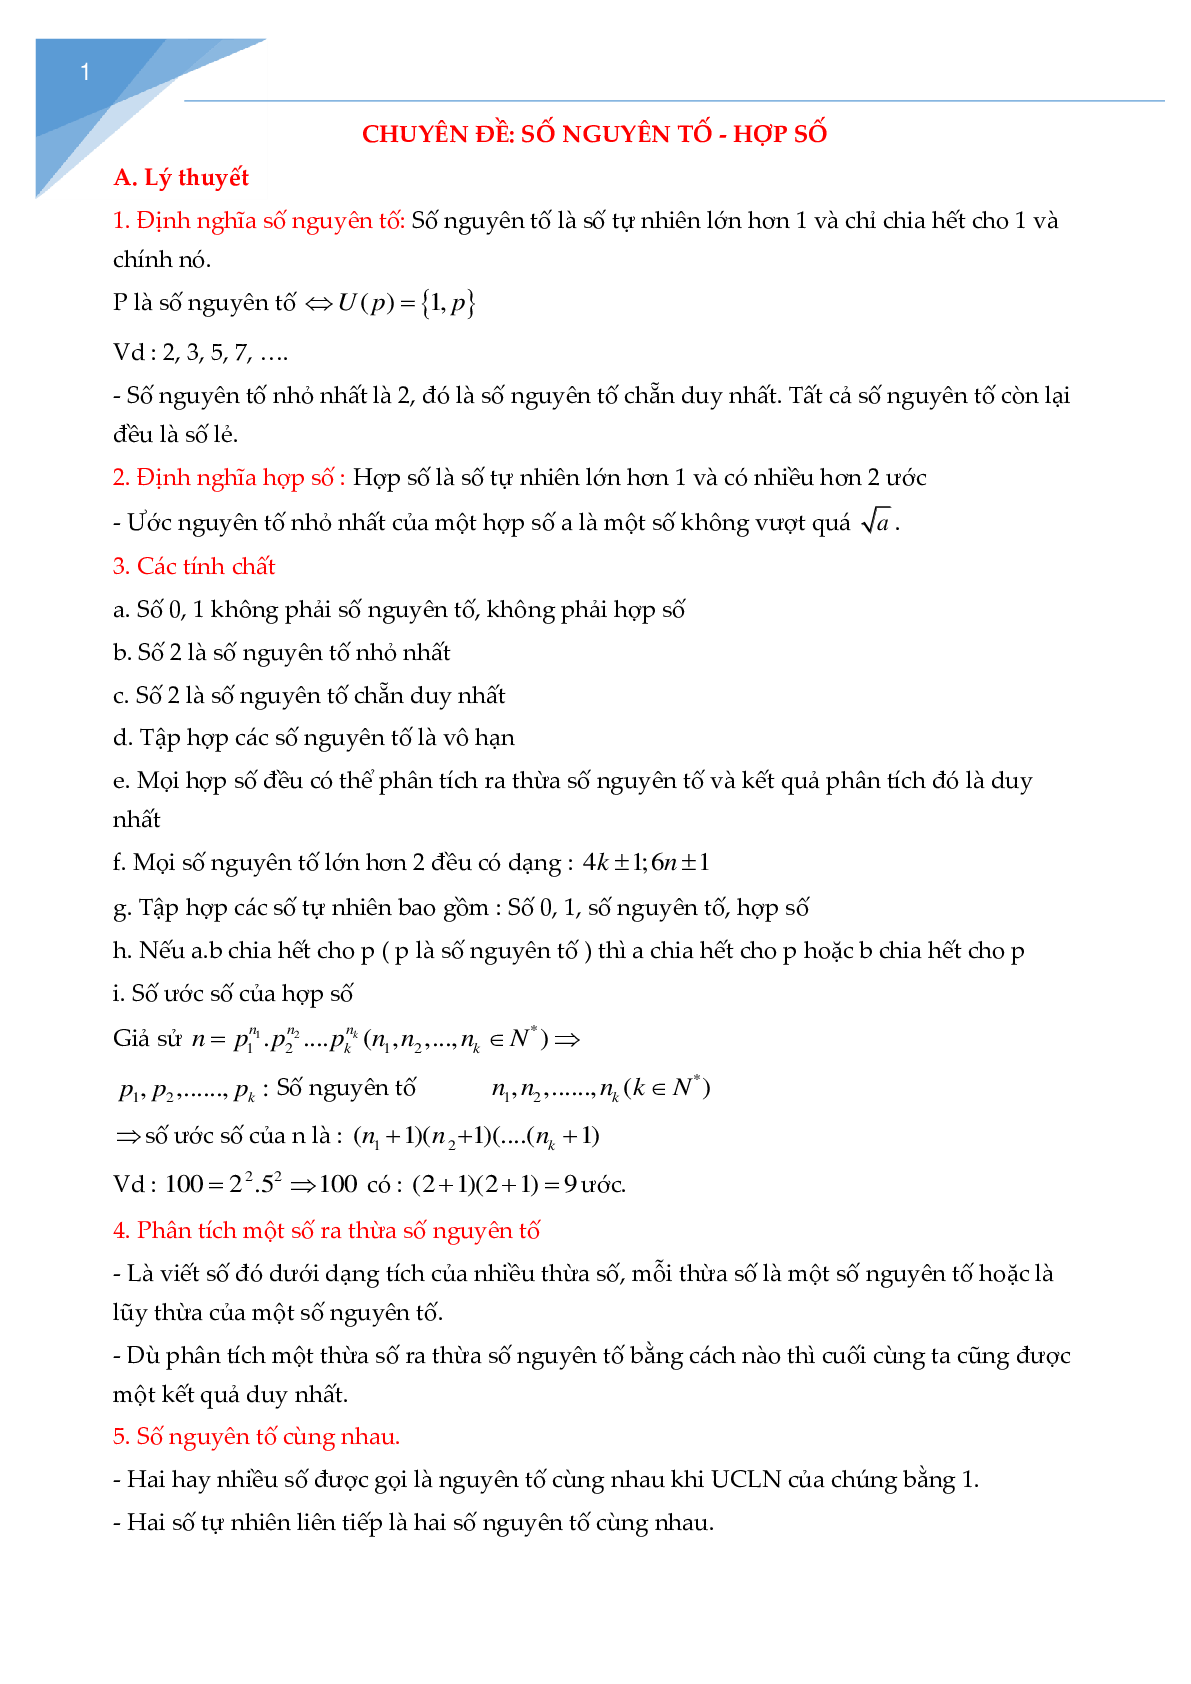 Chuyên đề số nguyên tố, hợp số (trang 1)